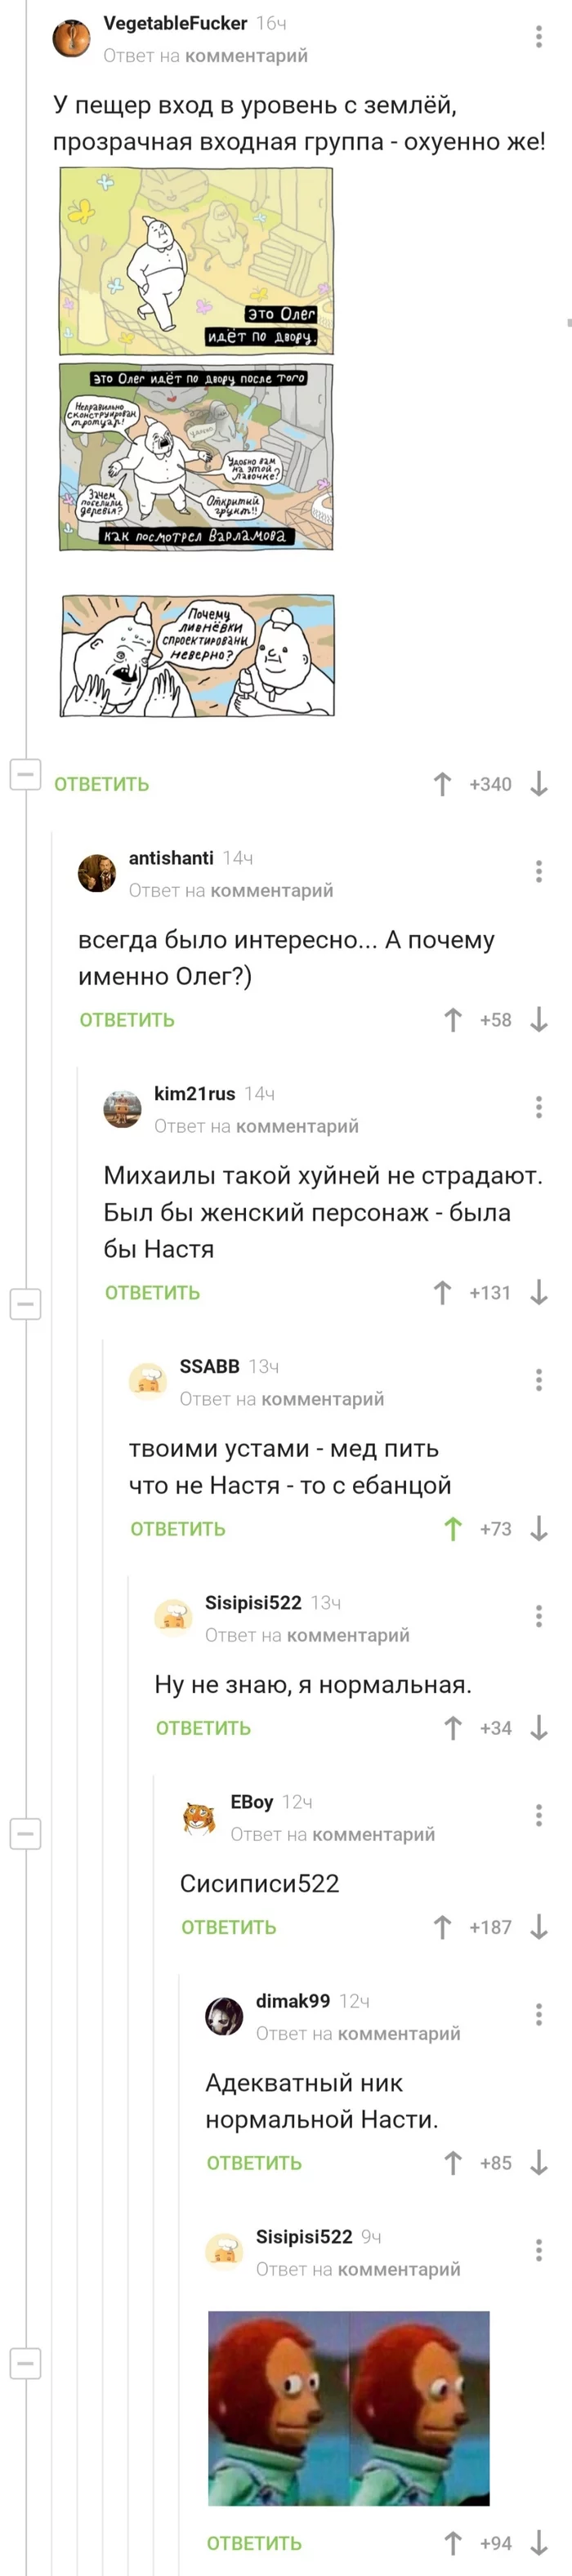 Oleg and Nastya - Screenshot, Anastasia, Oleg, Longpost, ShKYa, Comments on Peekaboo, Mat